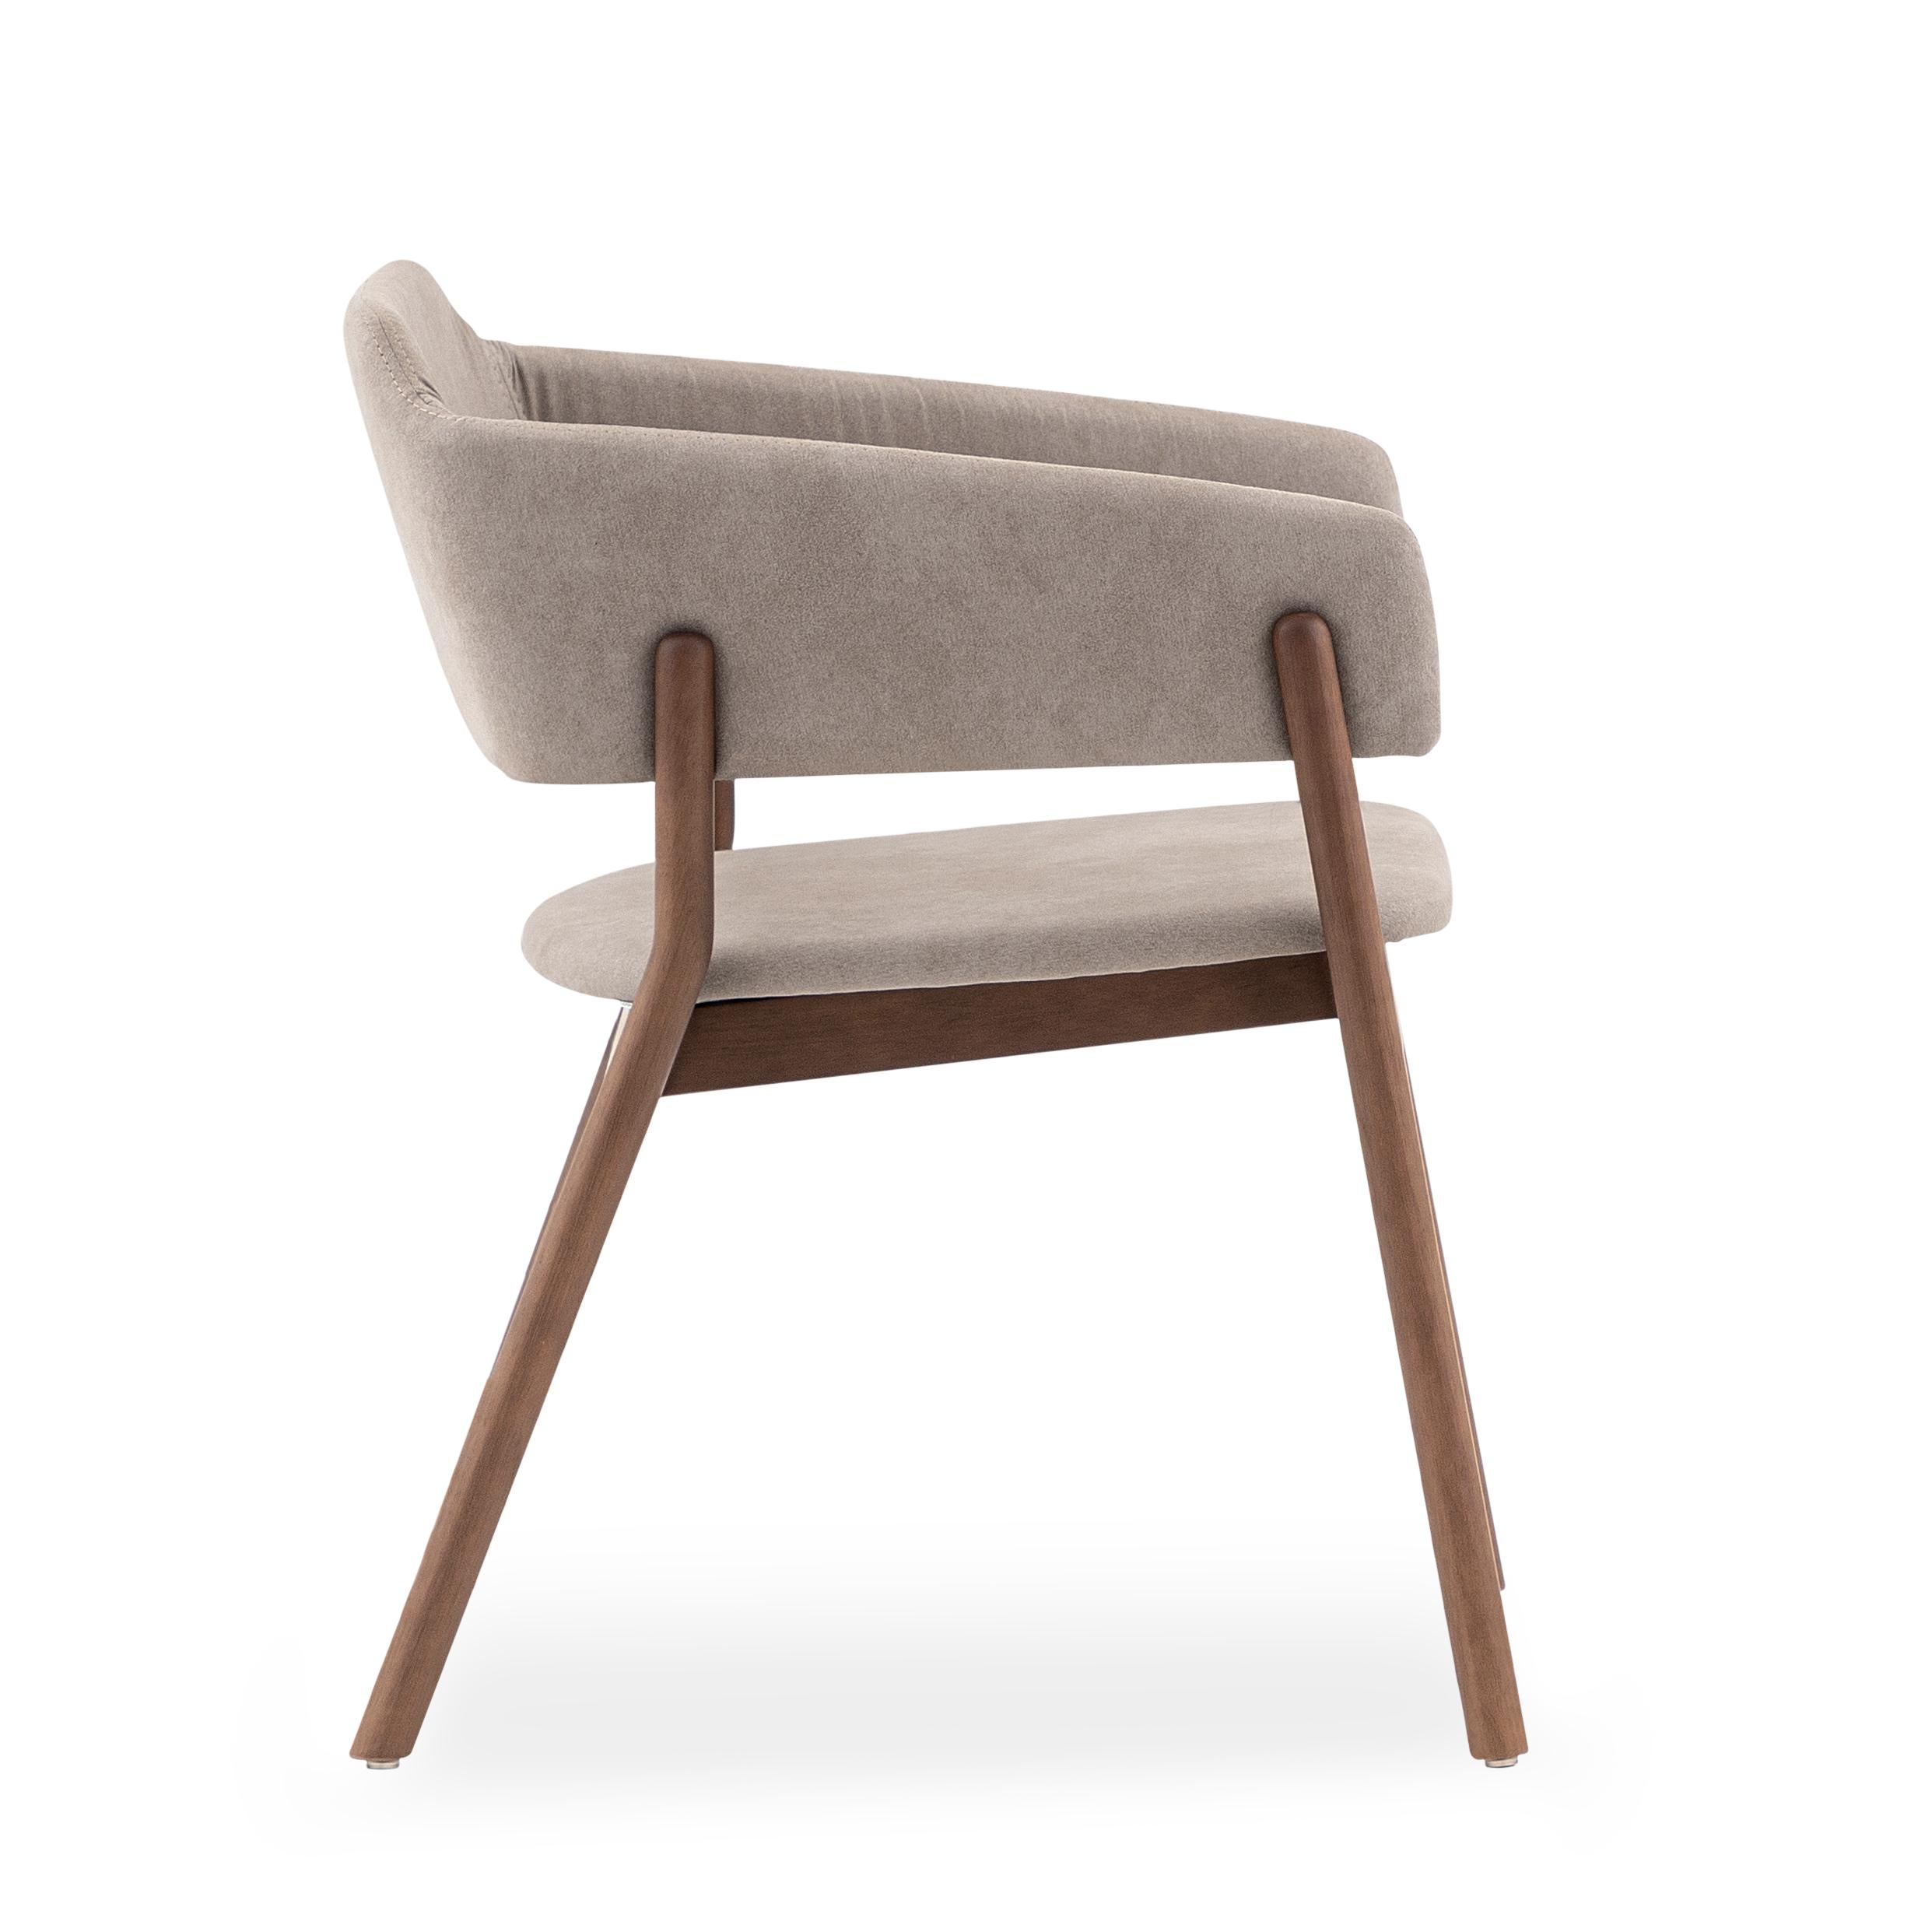 Notre équipe Uultis a créé cette magnifique chaise de salle à manger Stuzi pour décorer votre belle table de salle à manger avec un tissu marron clair et une finition en bois de noyer. Cette chaise a un beau design simple mais élégant qui va